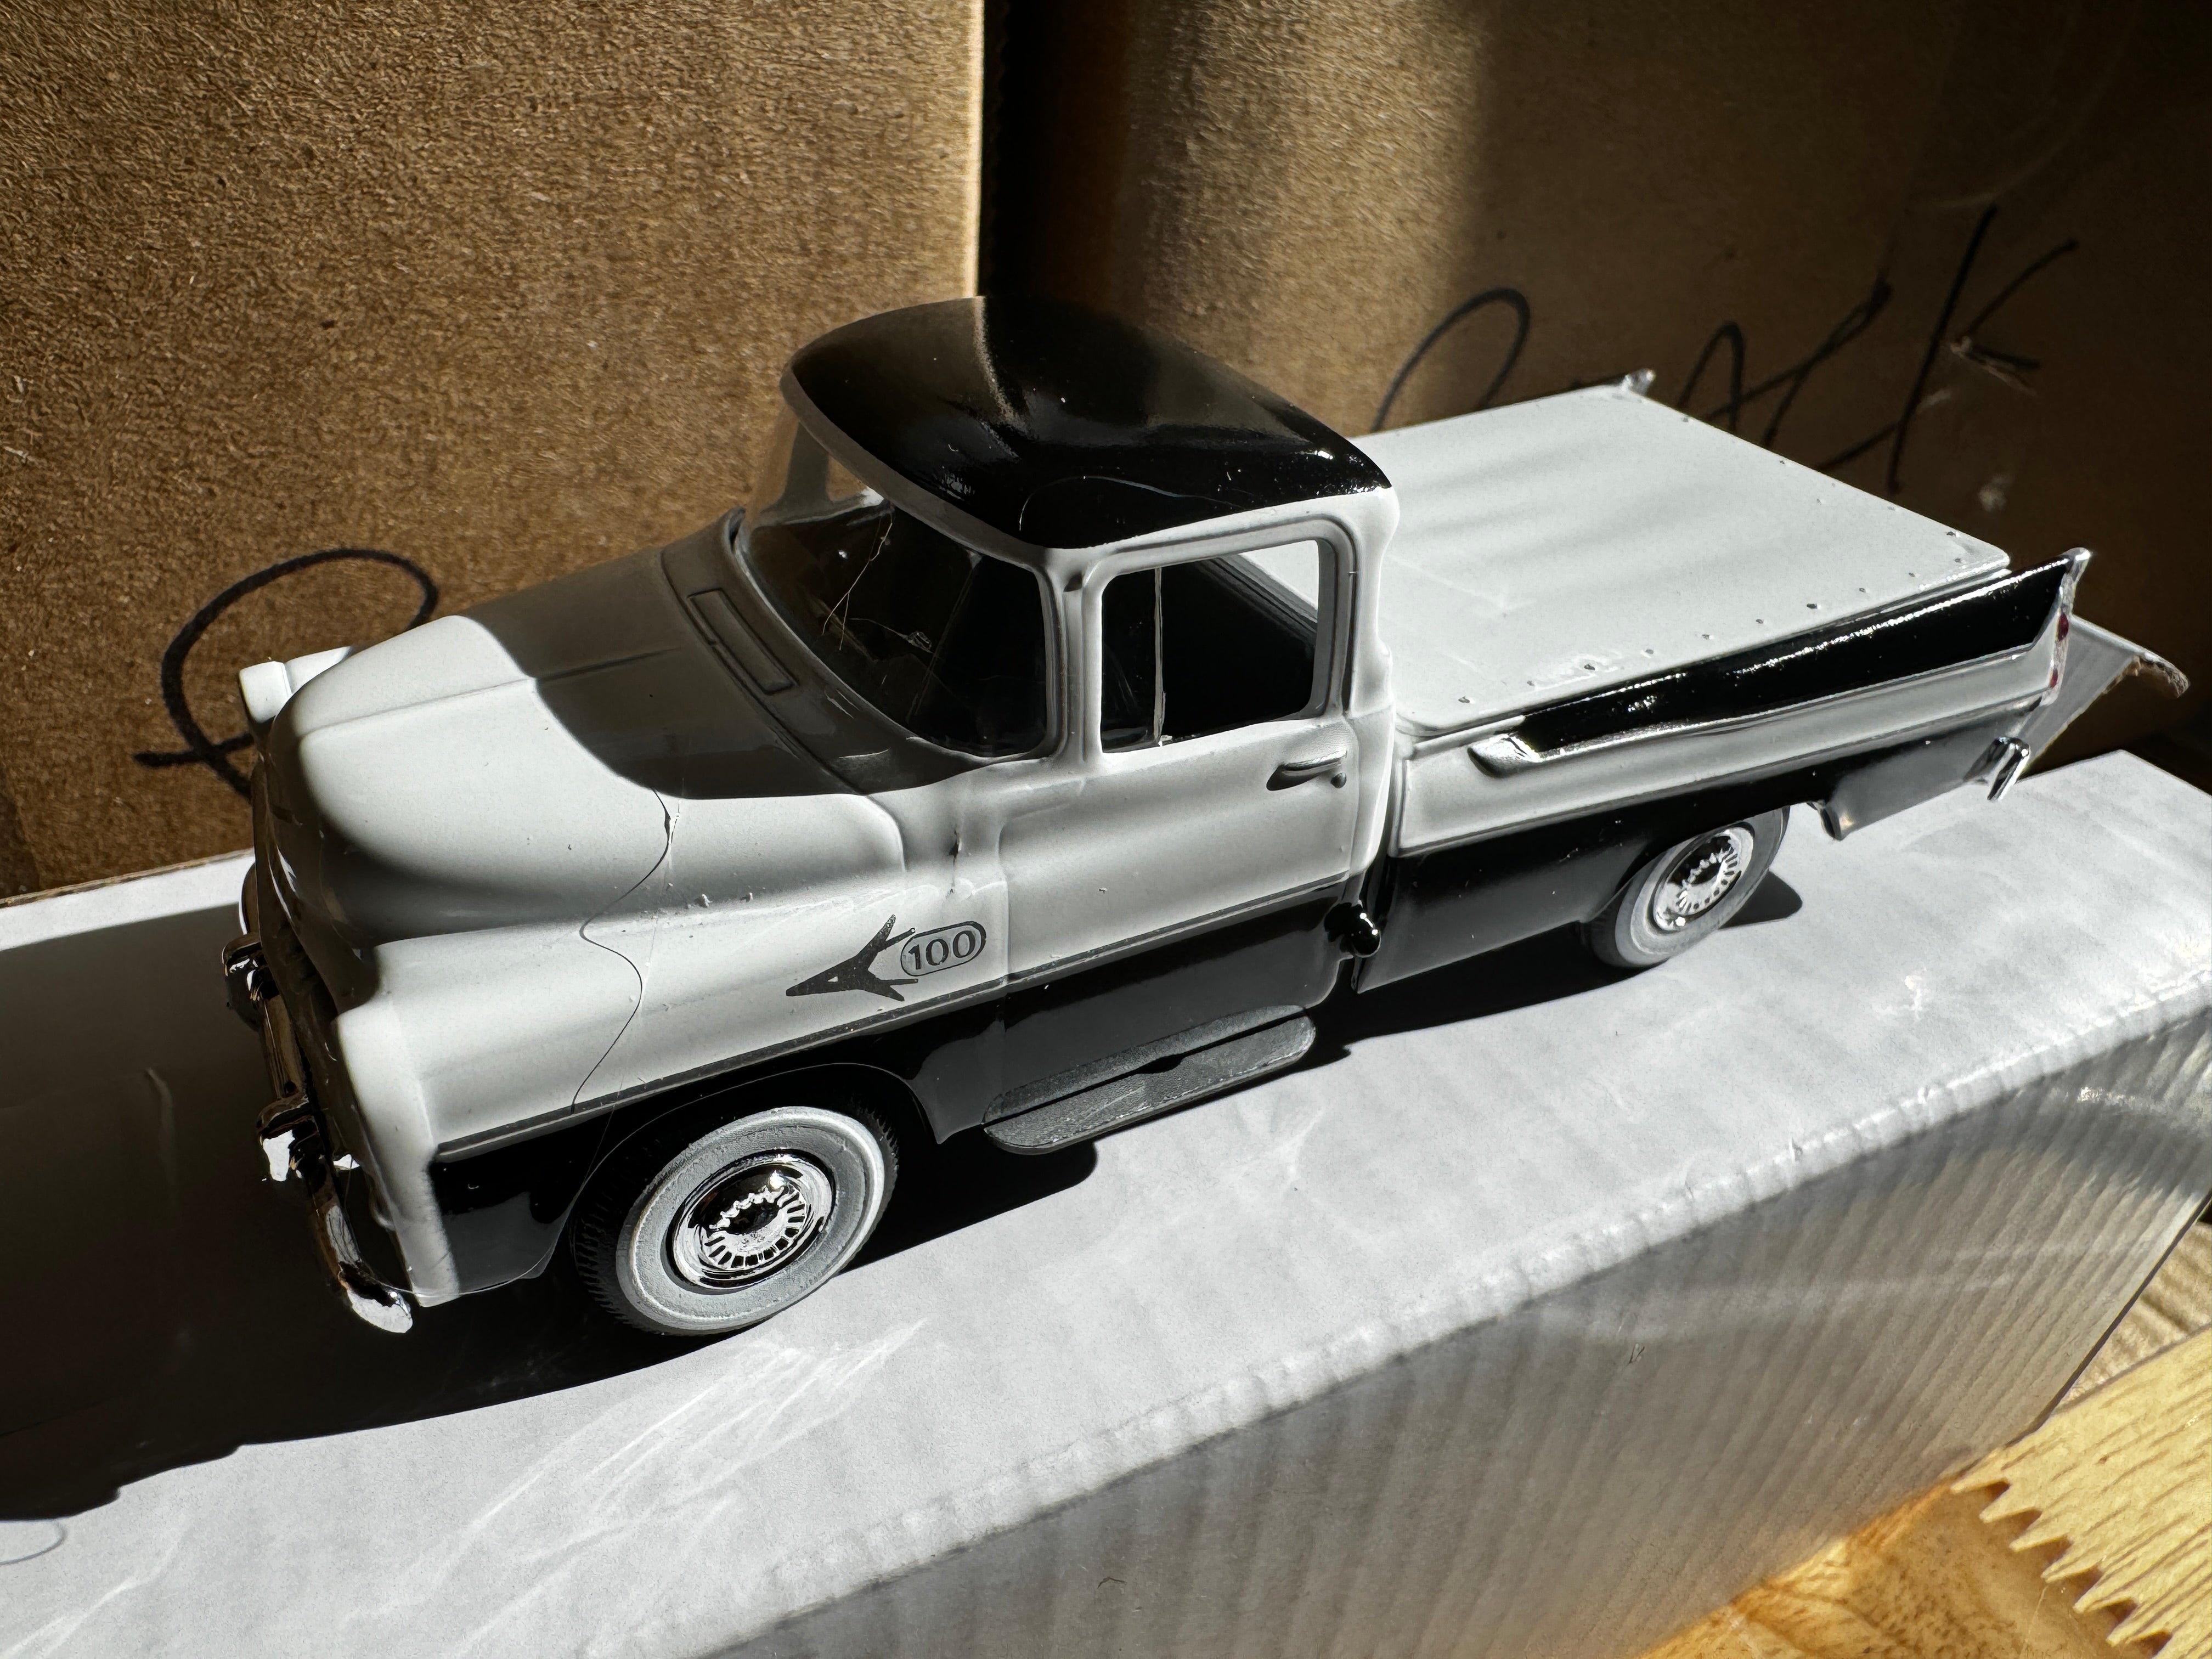 1957 Dodge Sweptside Truck (White/Black) 1/48 Diecast Car